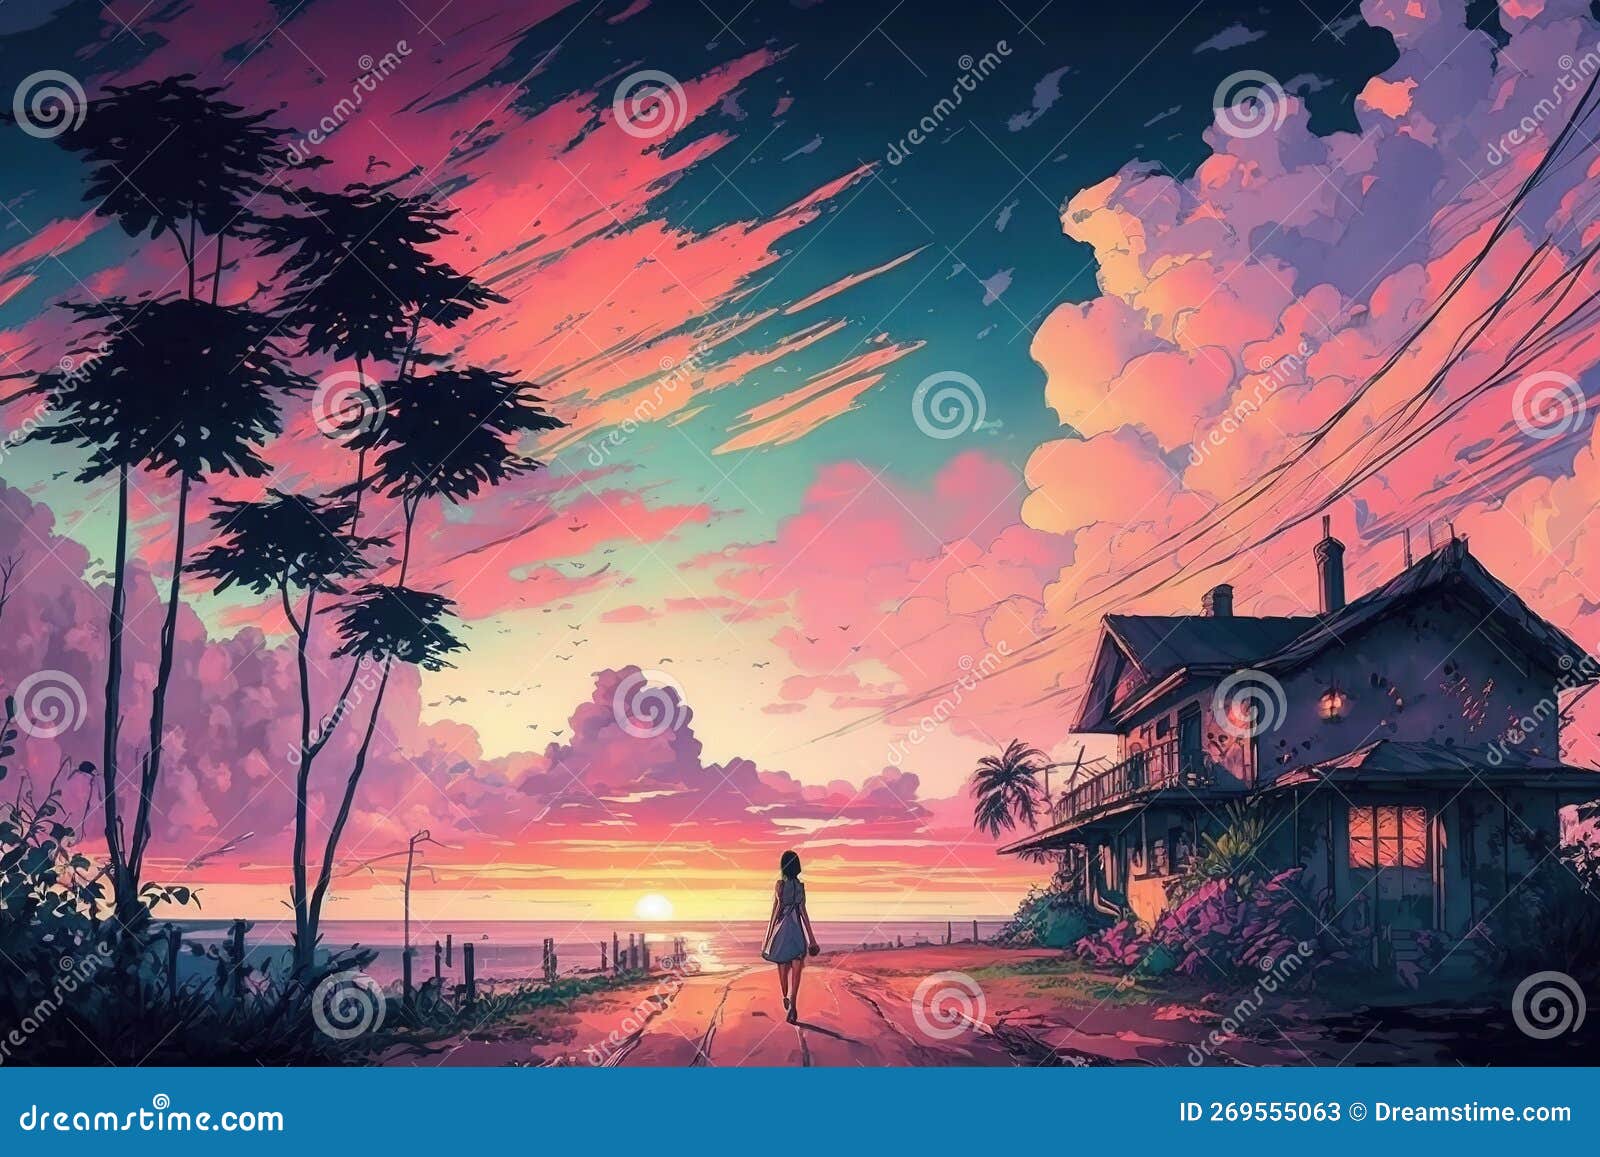 Beautiful anime-style sunset or sunrise 